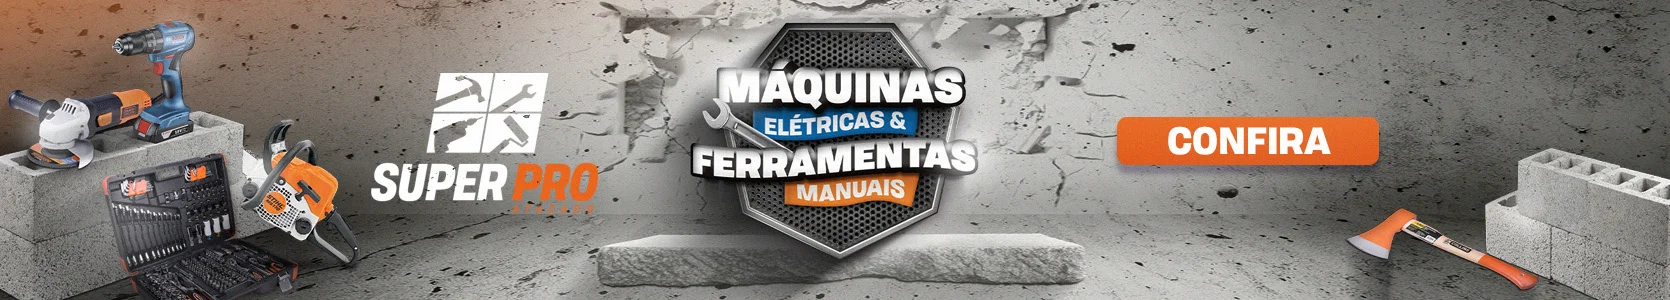 MAQUINAS ELETRICAS E FERRAMENTAS MANUAIS